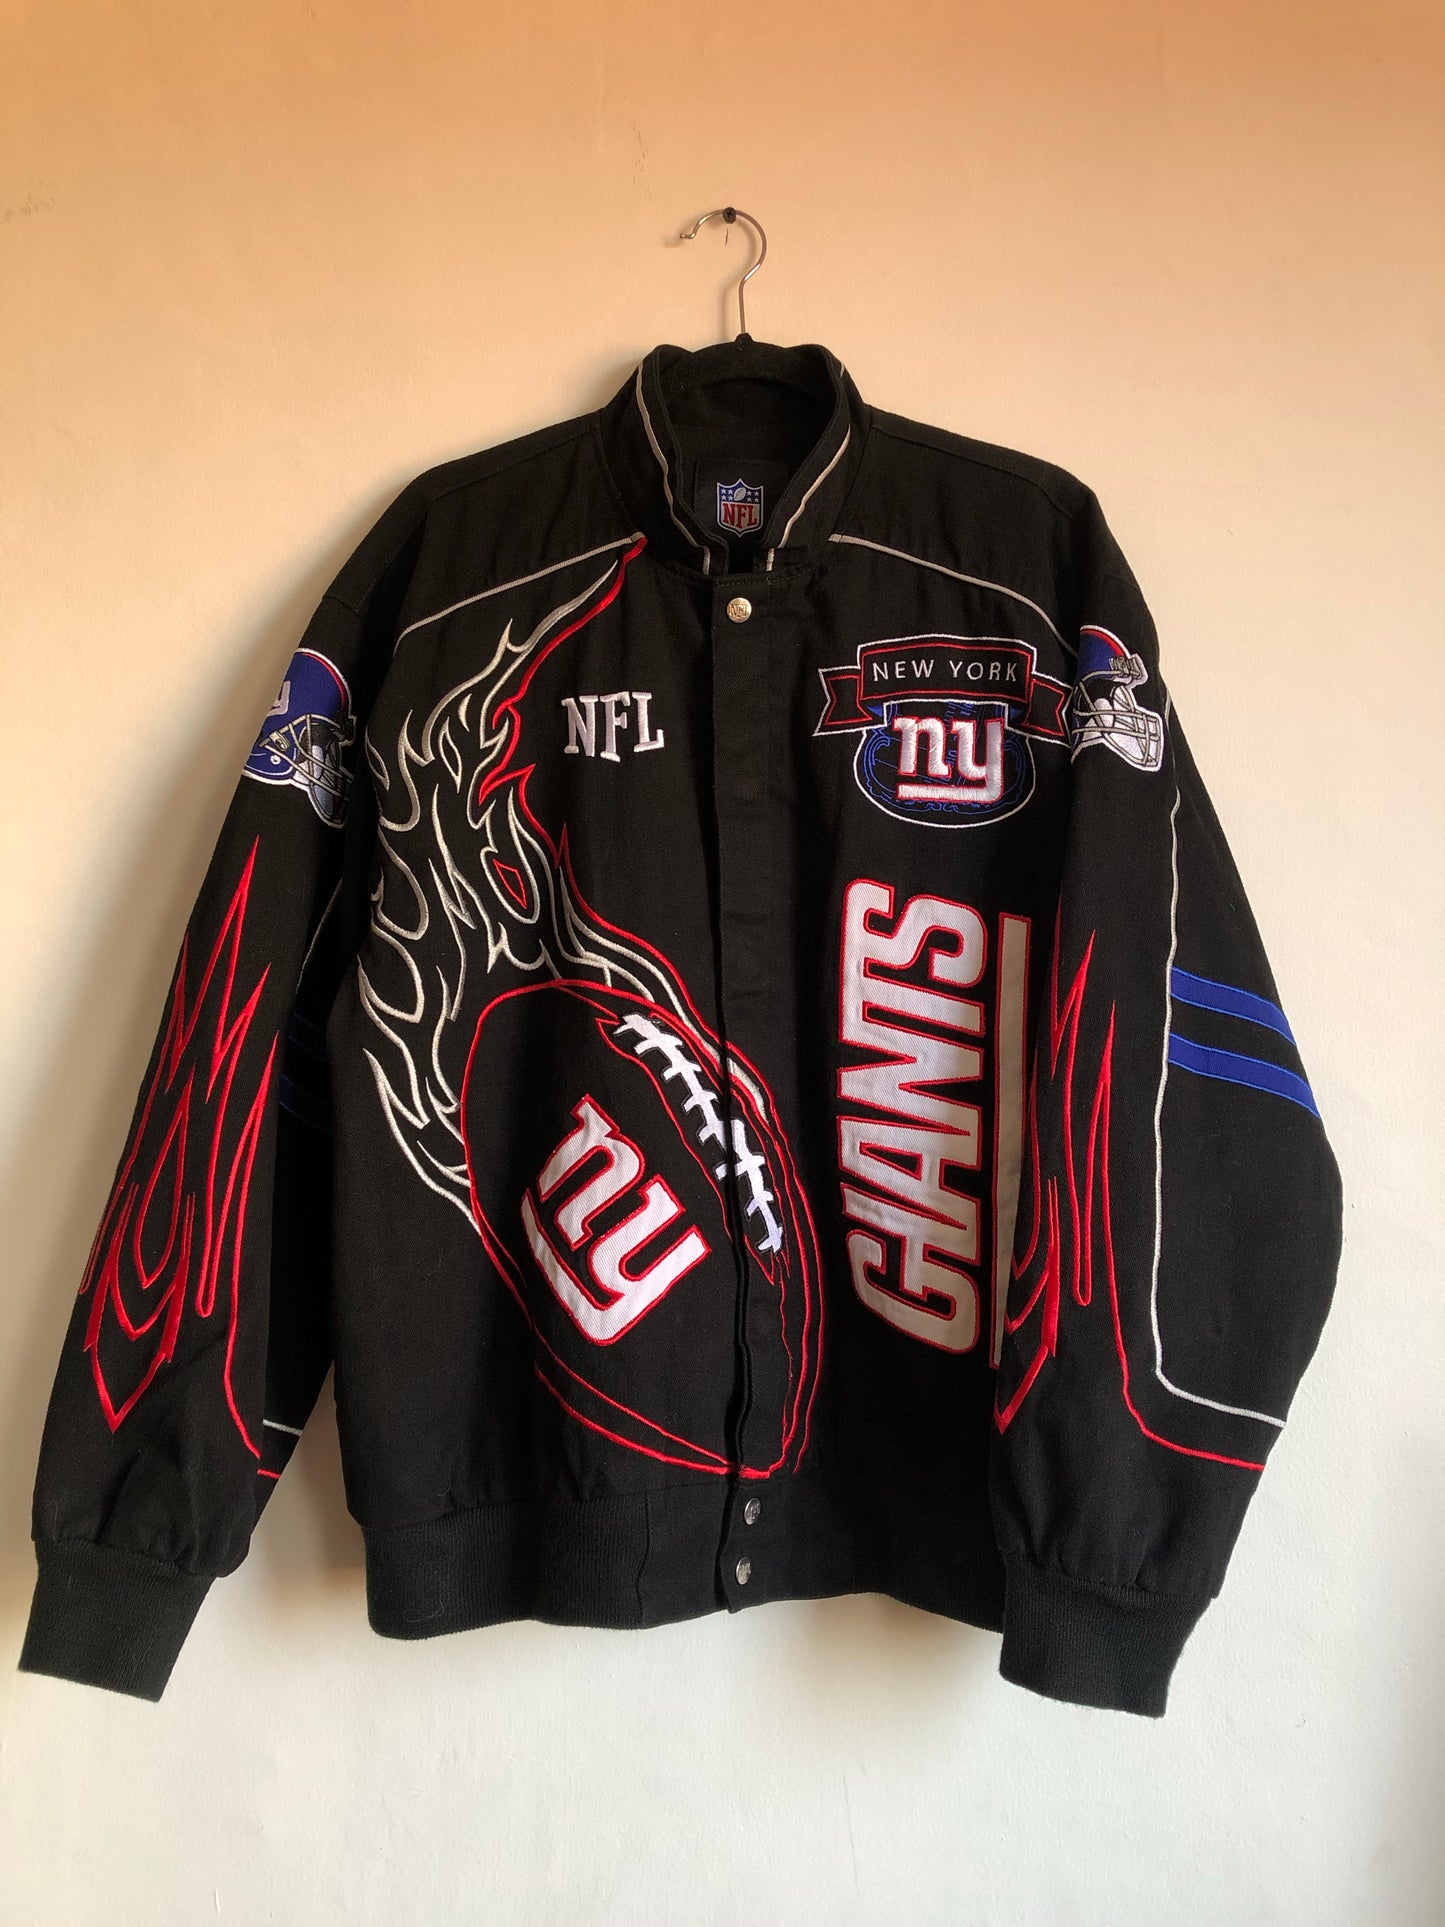 Giants jacket